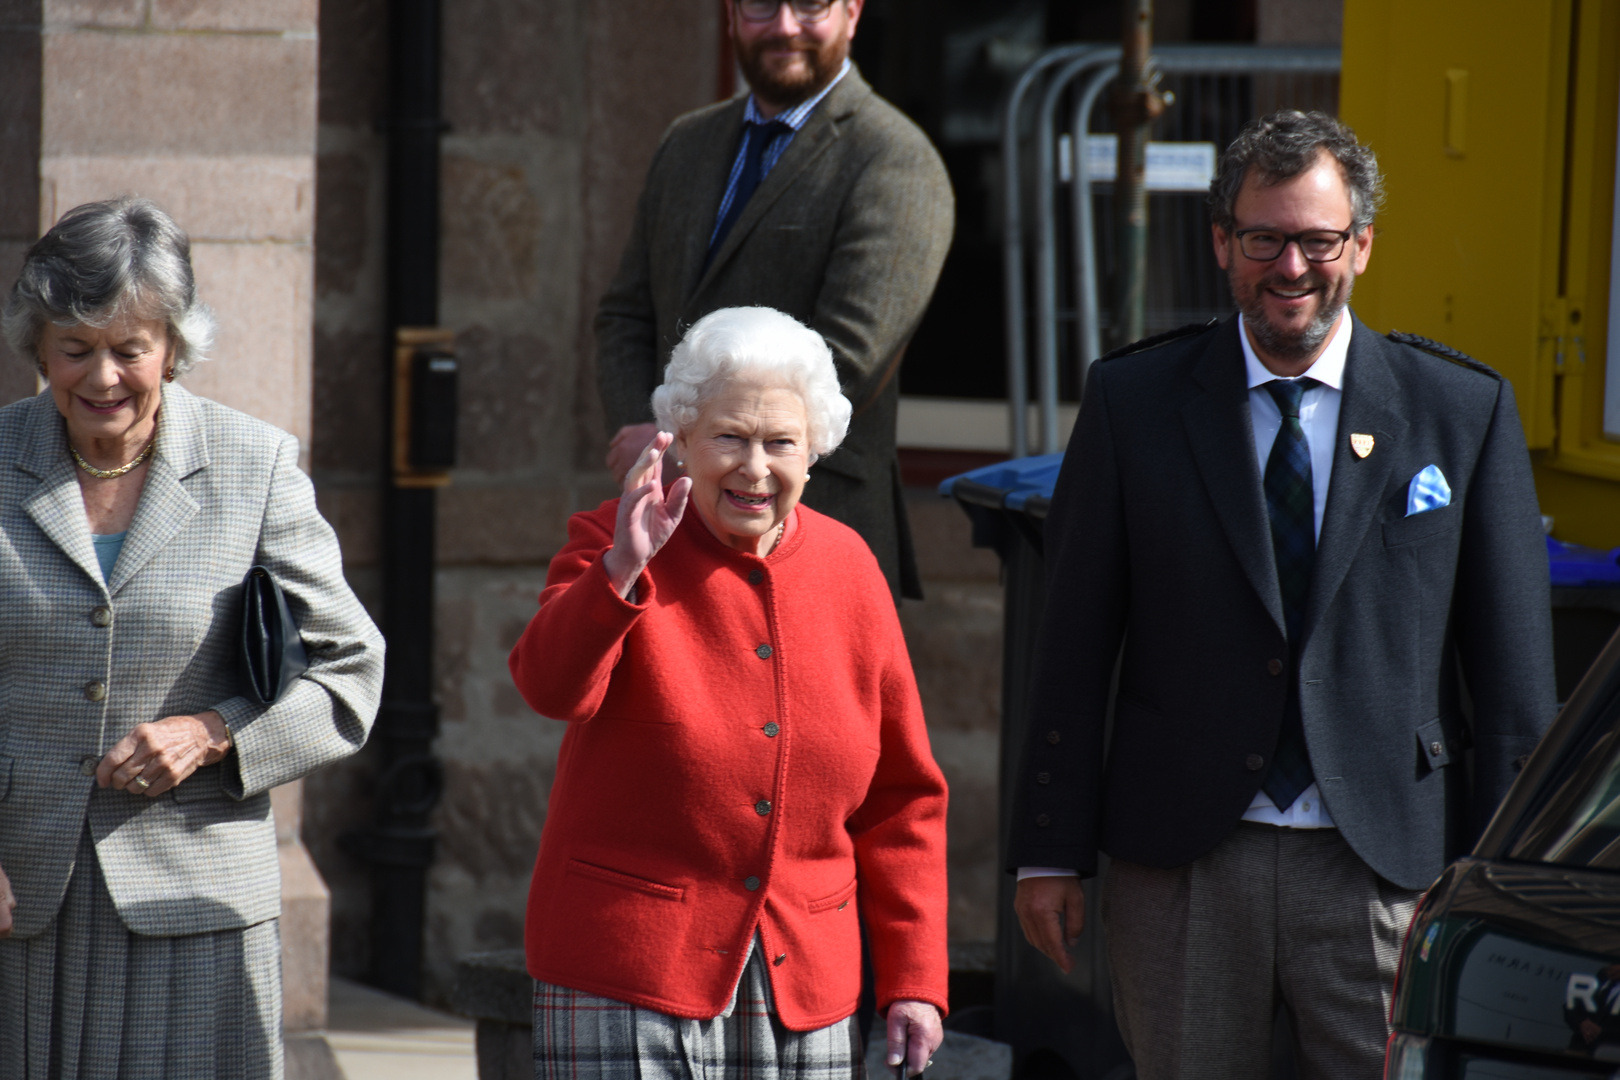 Her Majesty The Queen, Elizabeth II in Braemar Scotland August 2018